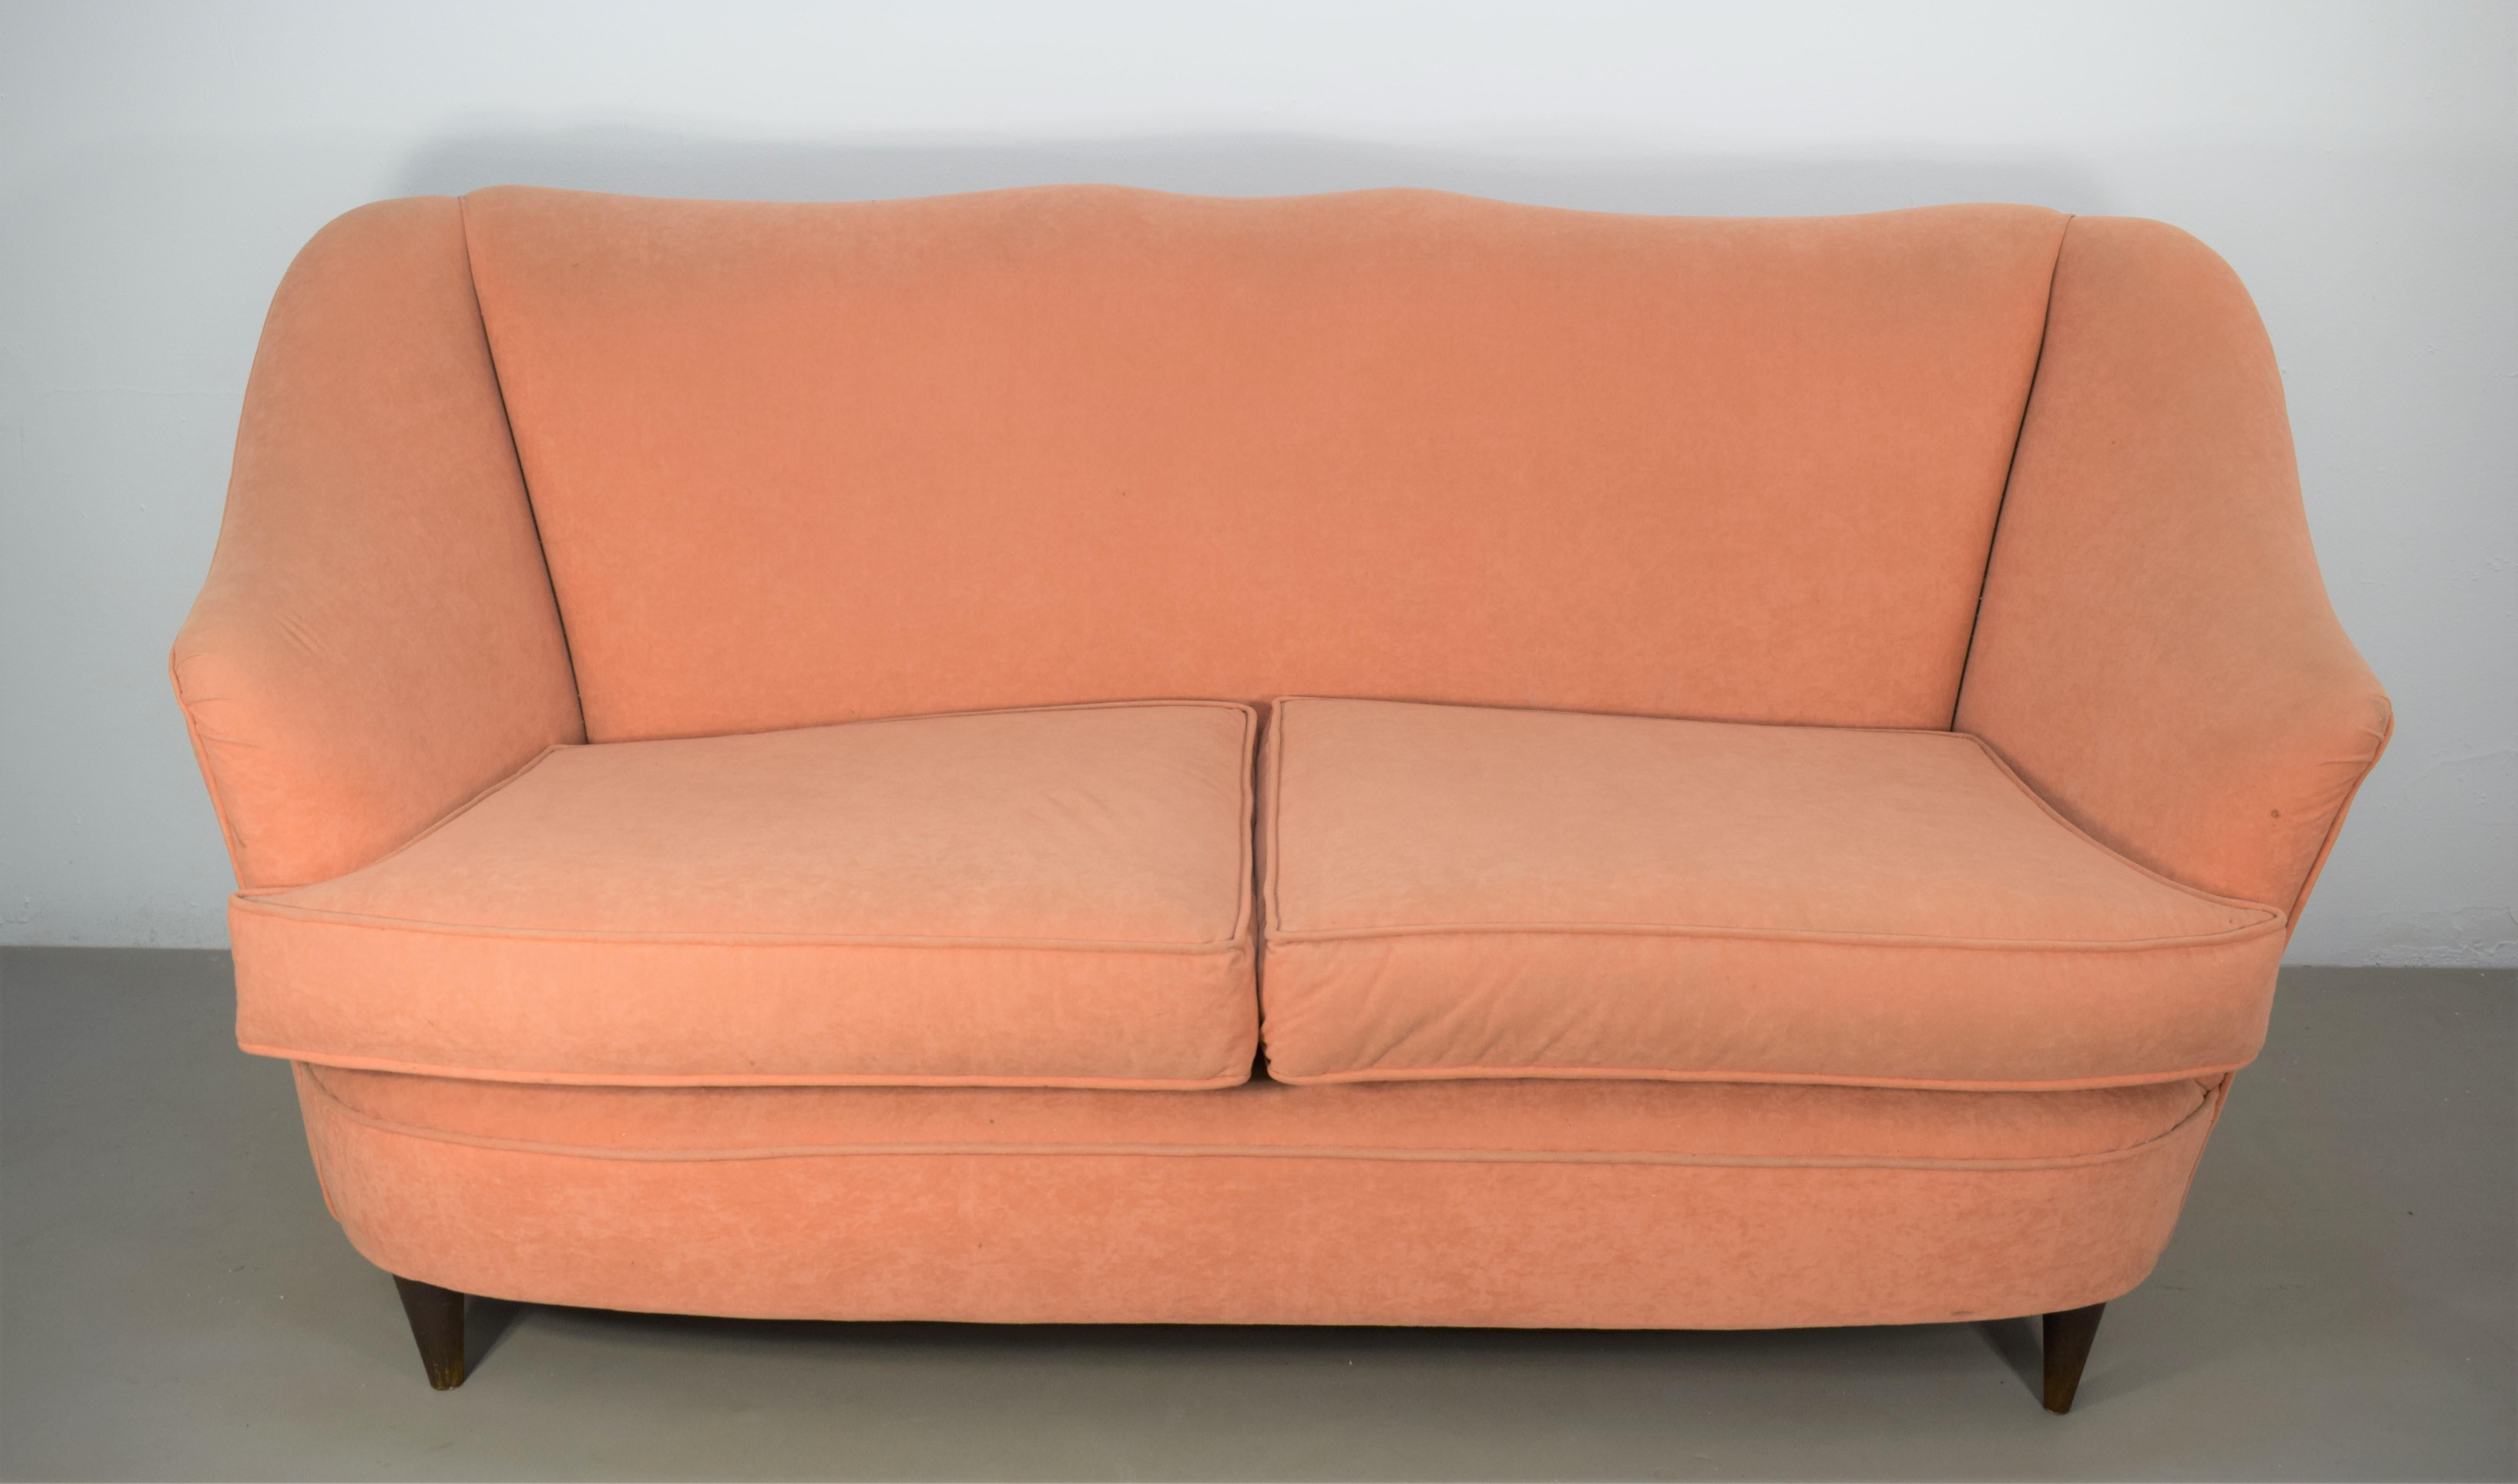 Italienisches Sofa im Stil von Gio Ponti für Casa e Giardino, 1950er Jahre.

Abmessungen: H= 82 cm; B= 160 cm; T= 65 cm; H Sitz= 45 cm.